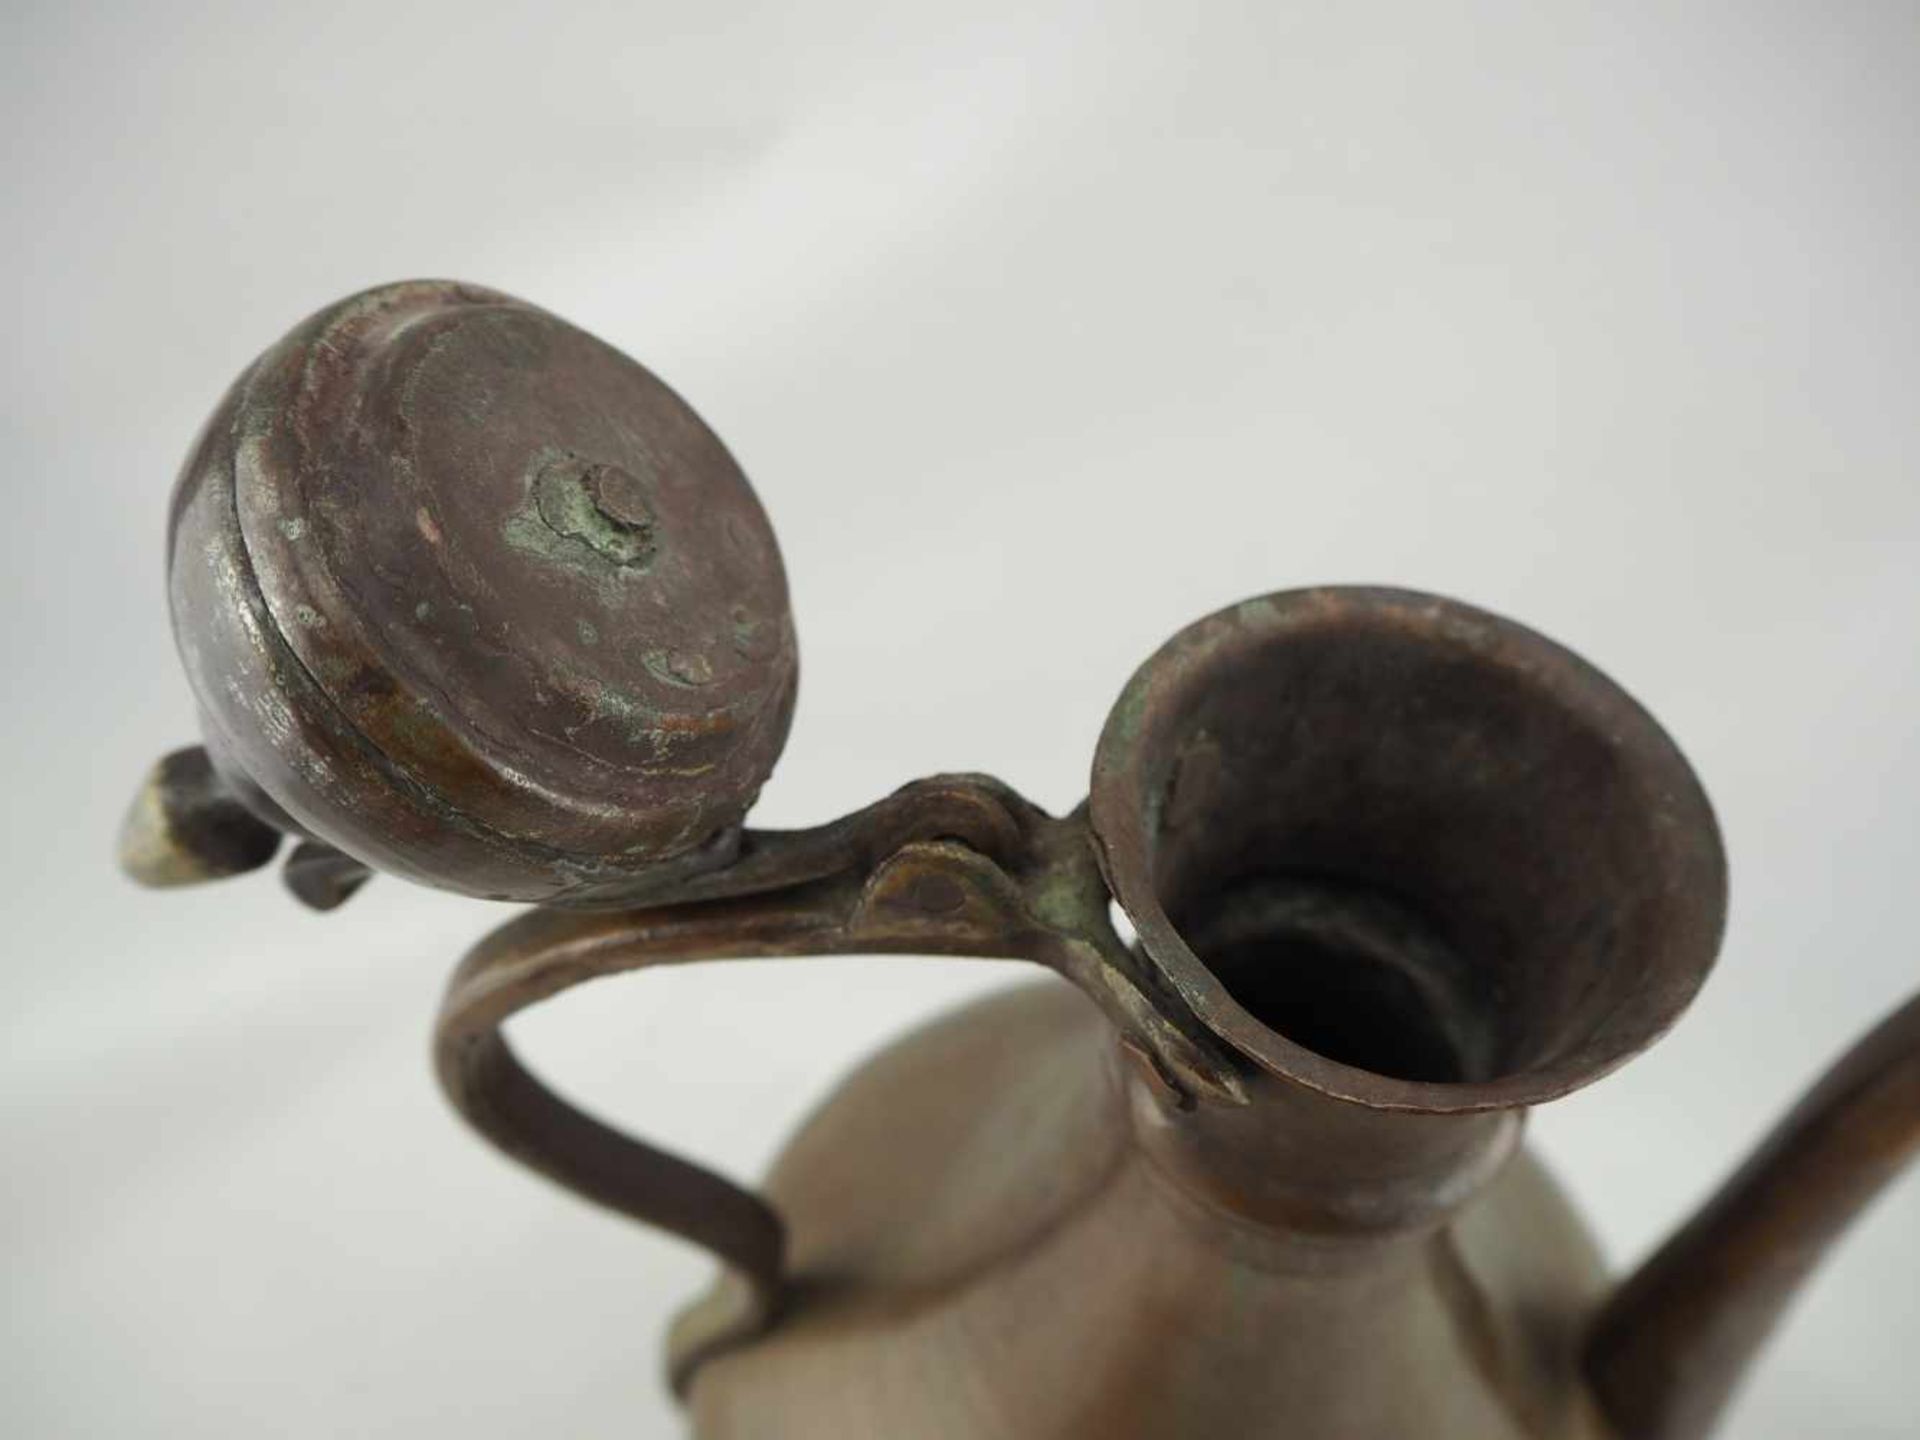 Tee-/Wasserkanne, PersienAus Kupfer gefertigt. Stark gebaucht, nach oben sich verjüngend, mit Deckel - Bild 2 aus 3